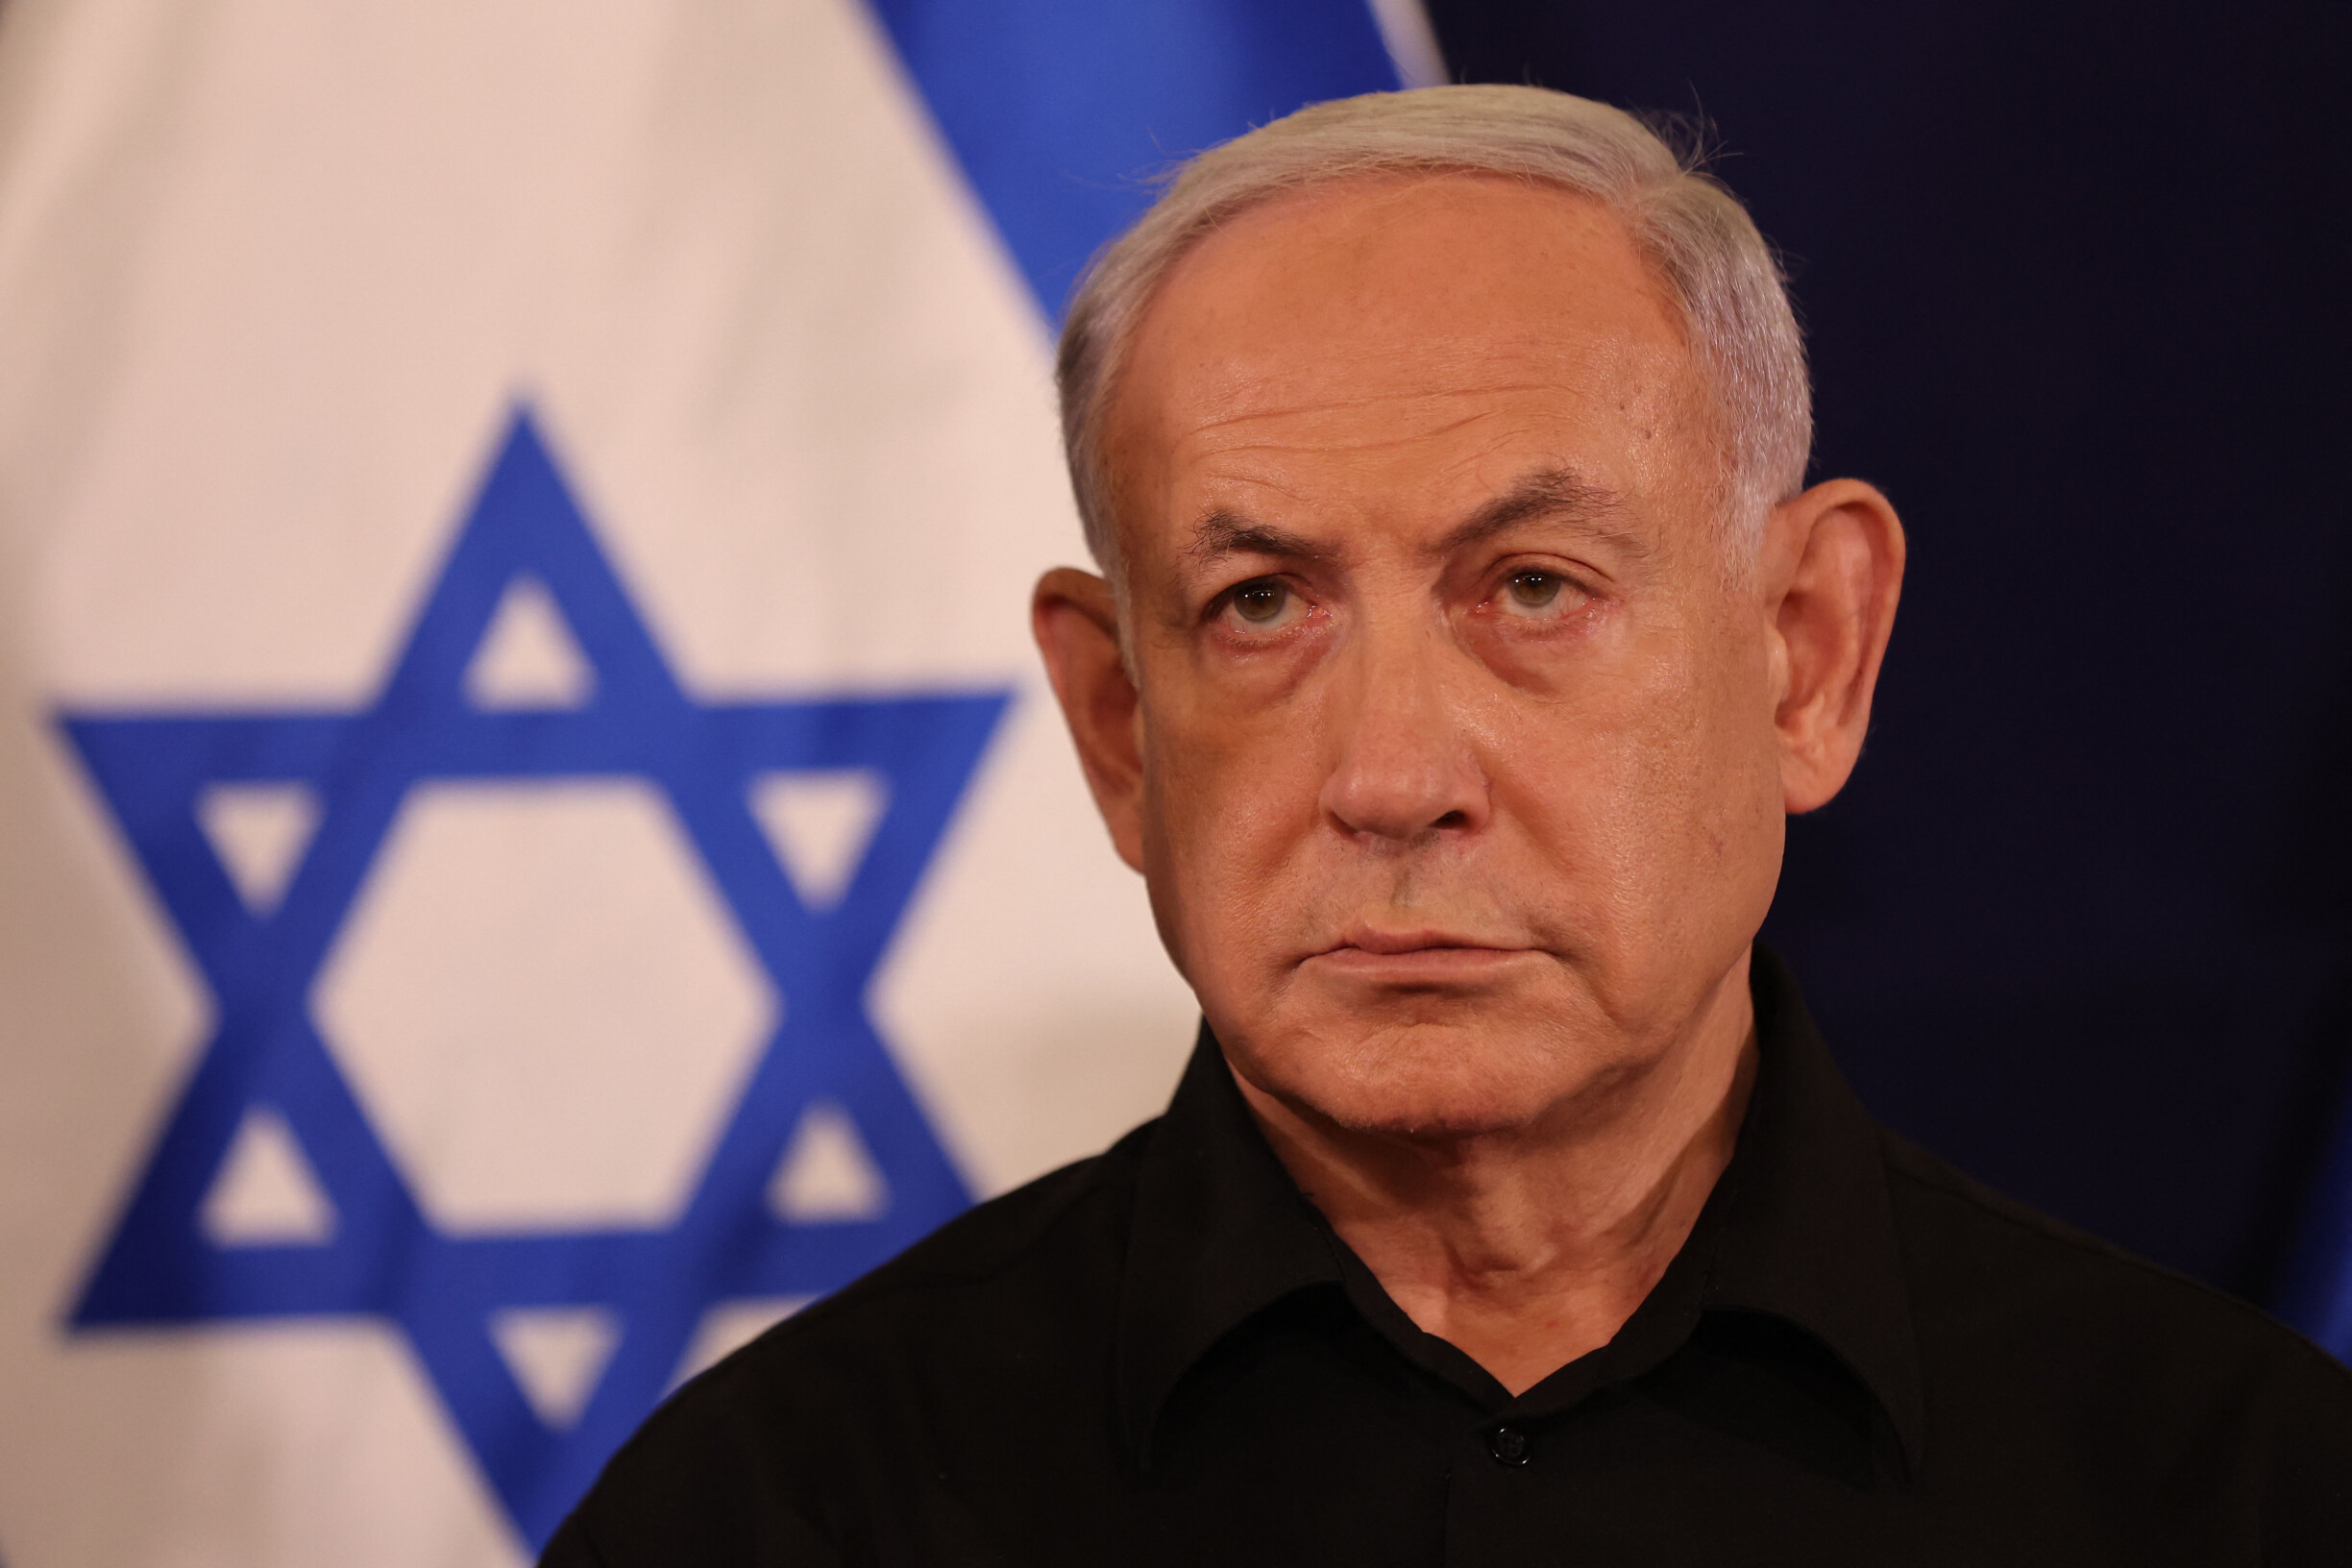 Irã alerta Israel para possível escalada regional caso “agressões